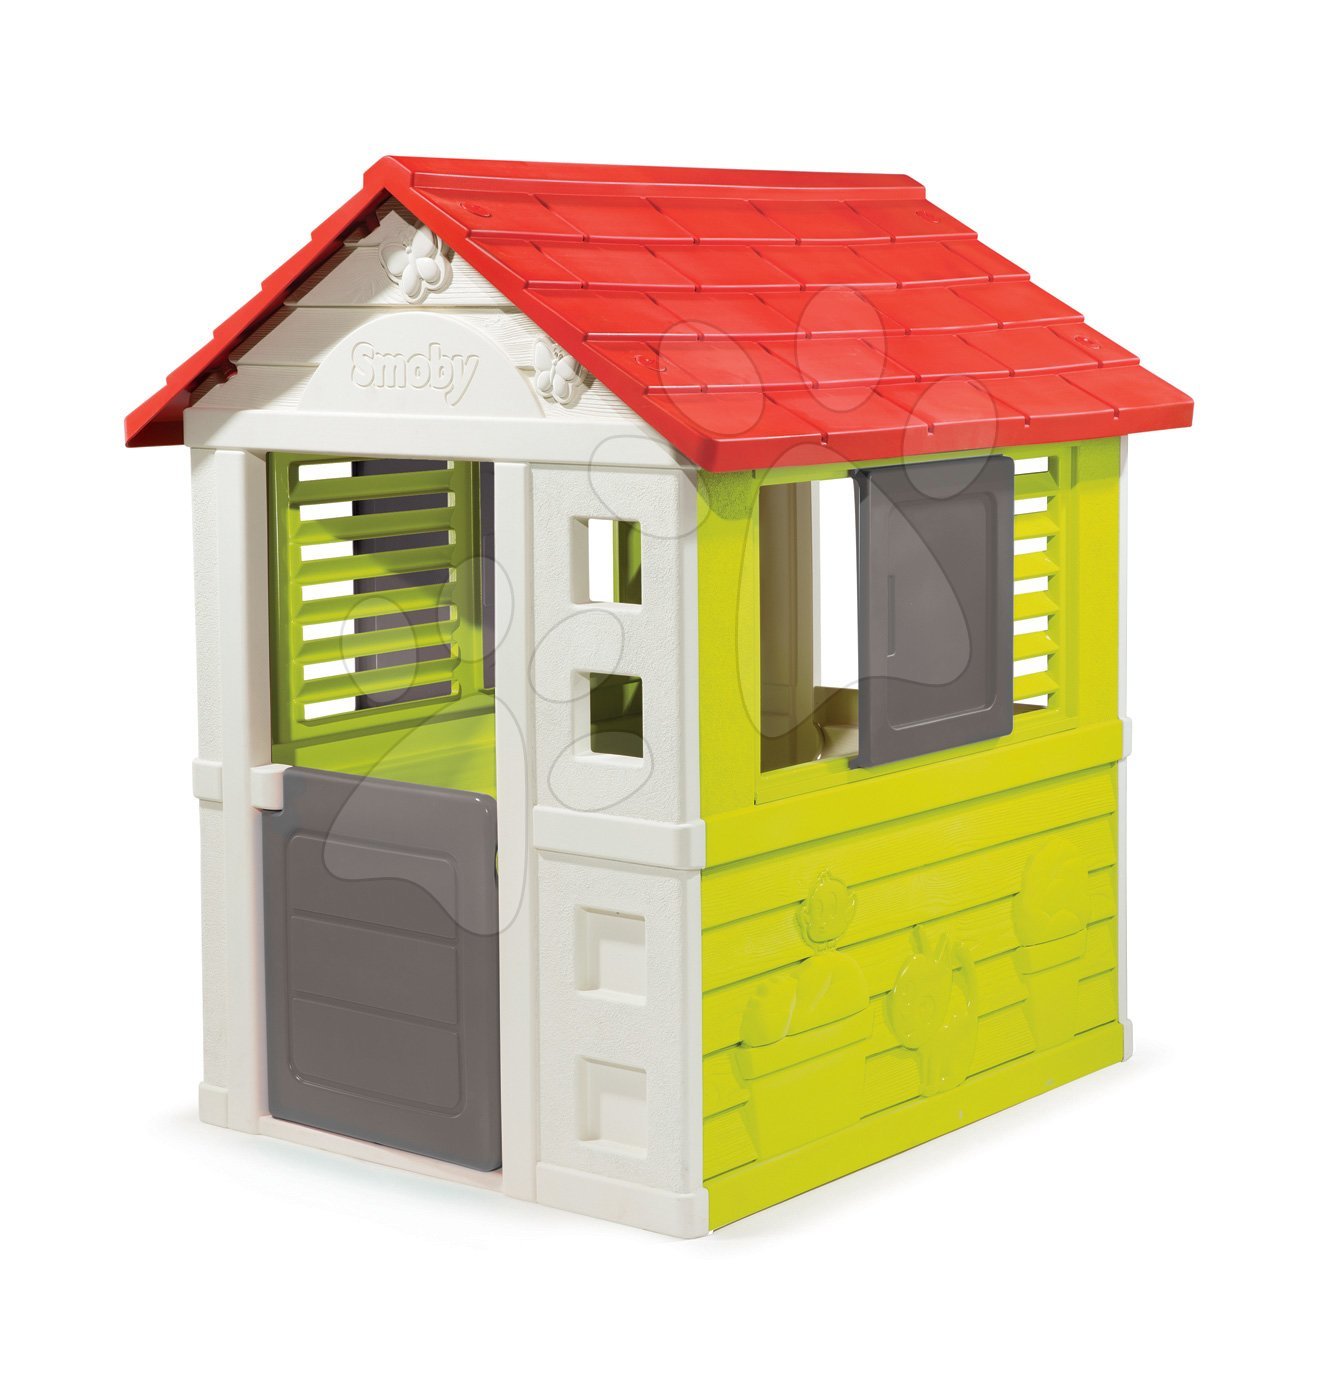 Domčeky pre deti - Domček Nature Smoby červeno-zelený 3 okná s 2 žalúziami a 2 posuvné okenice s UV filtrom od 2 rokov